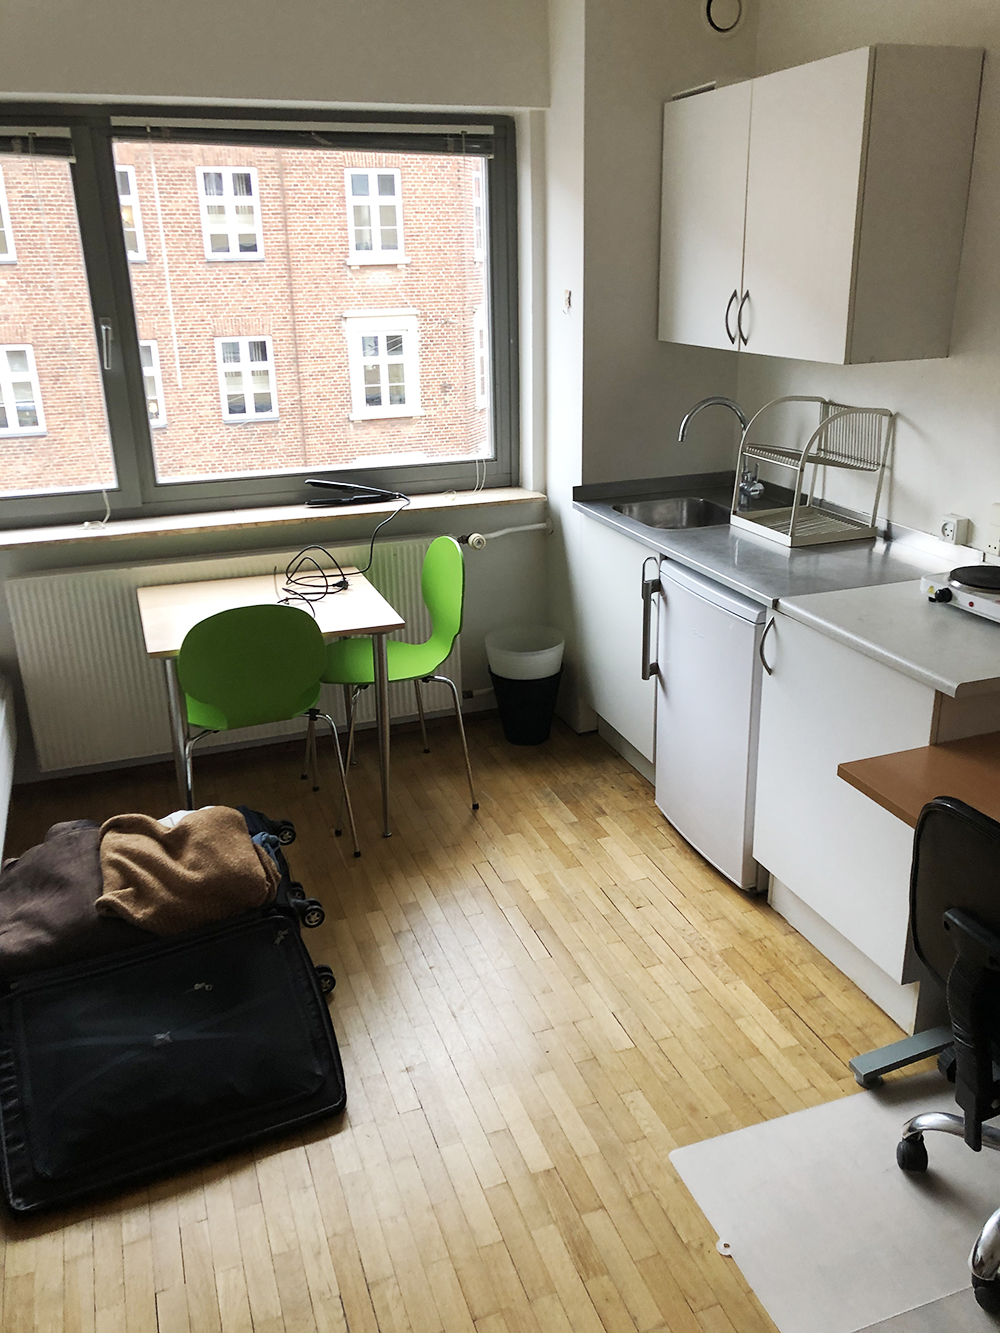 Цены на жилье в Дании очень высокие. Я снимал старую комнату-студию площадью 20 м² за 600 € в месяц